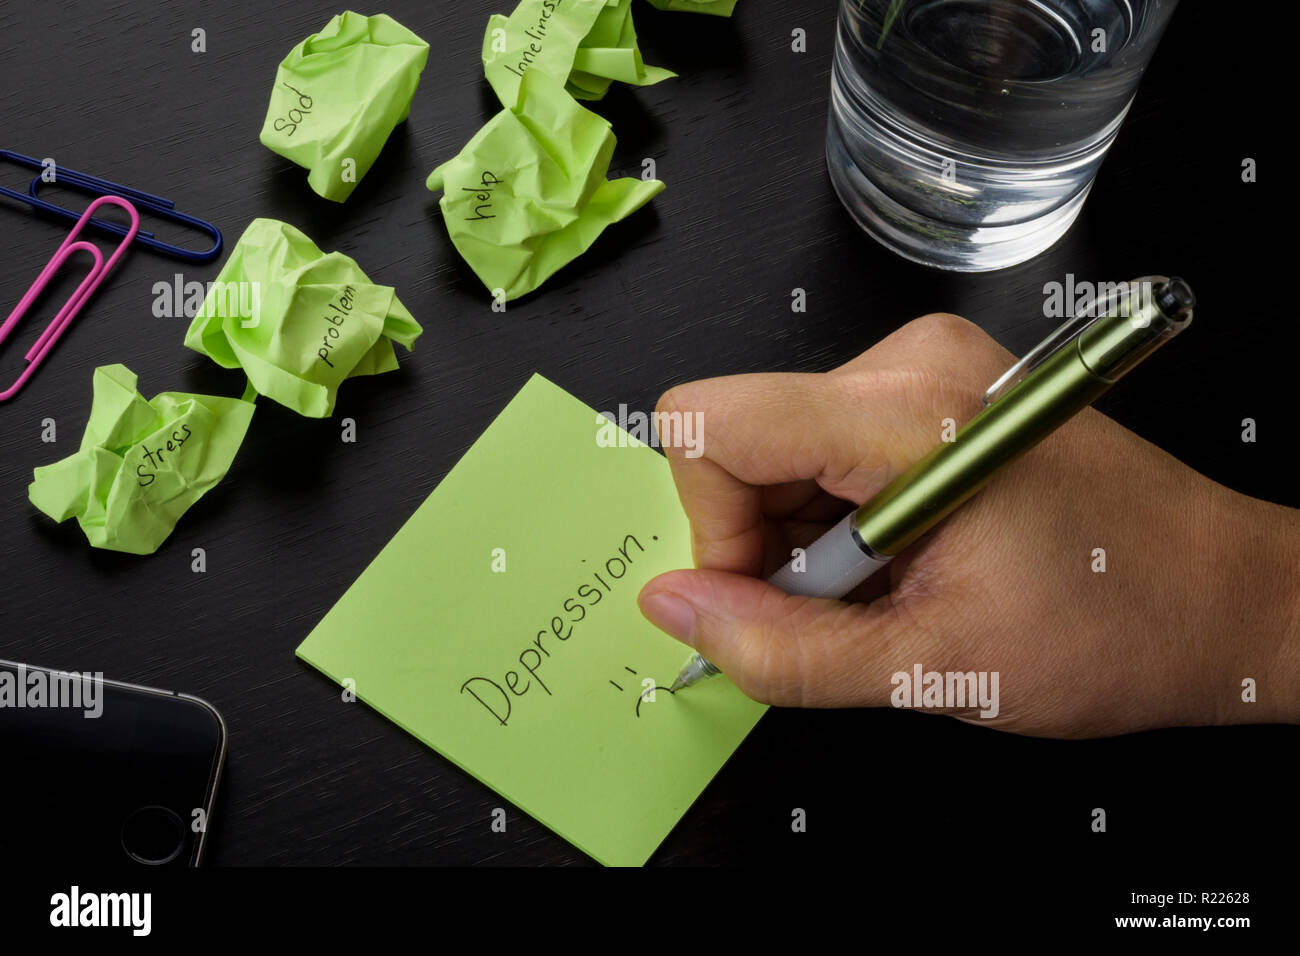 Eine Hand schreiben auf einen grünen Zettel das Wort 'depression." ein Foto über Depressionen, Traurigkeit und Einsamkeit. Zerknitterte grün Haftnotizen verstreut. Stockfoto